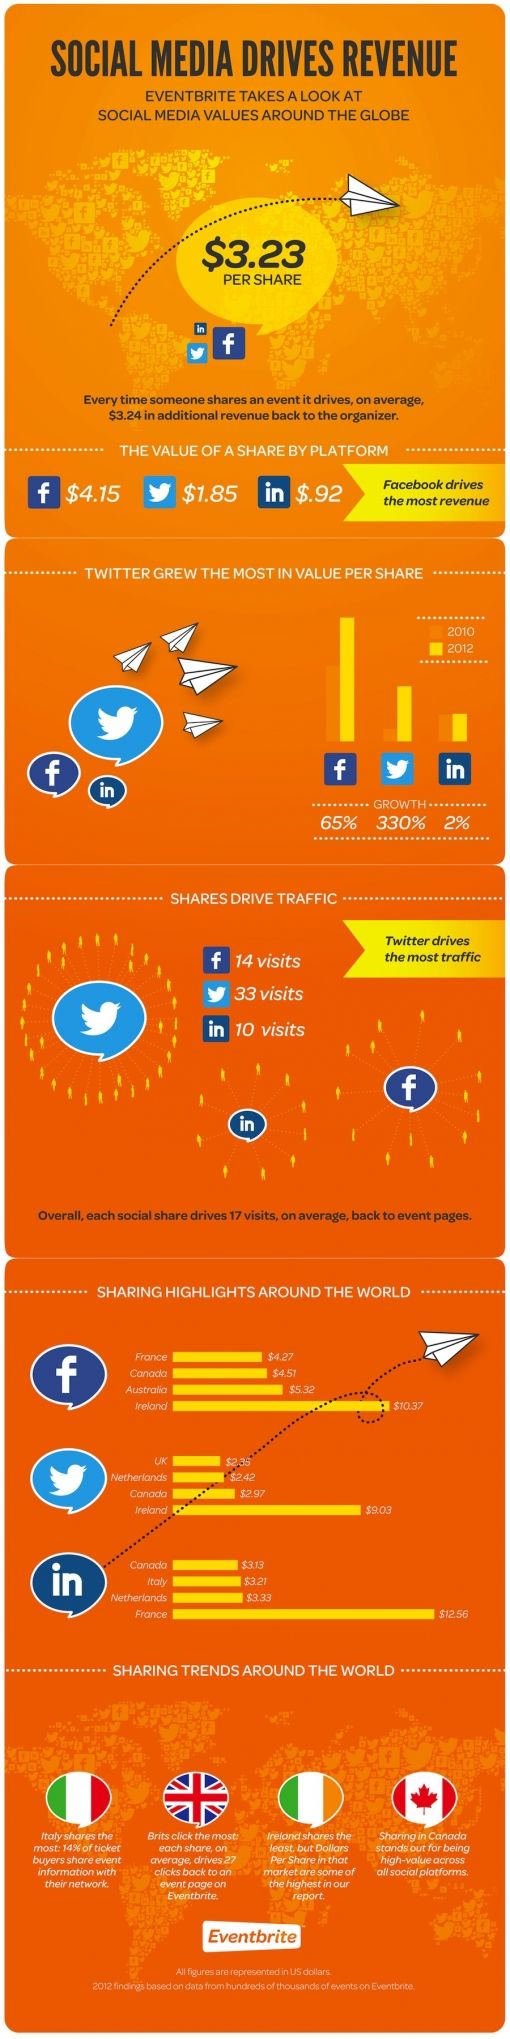 social-media-revenue.jpg